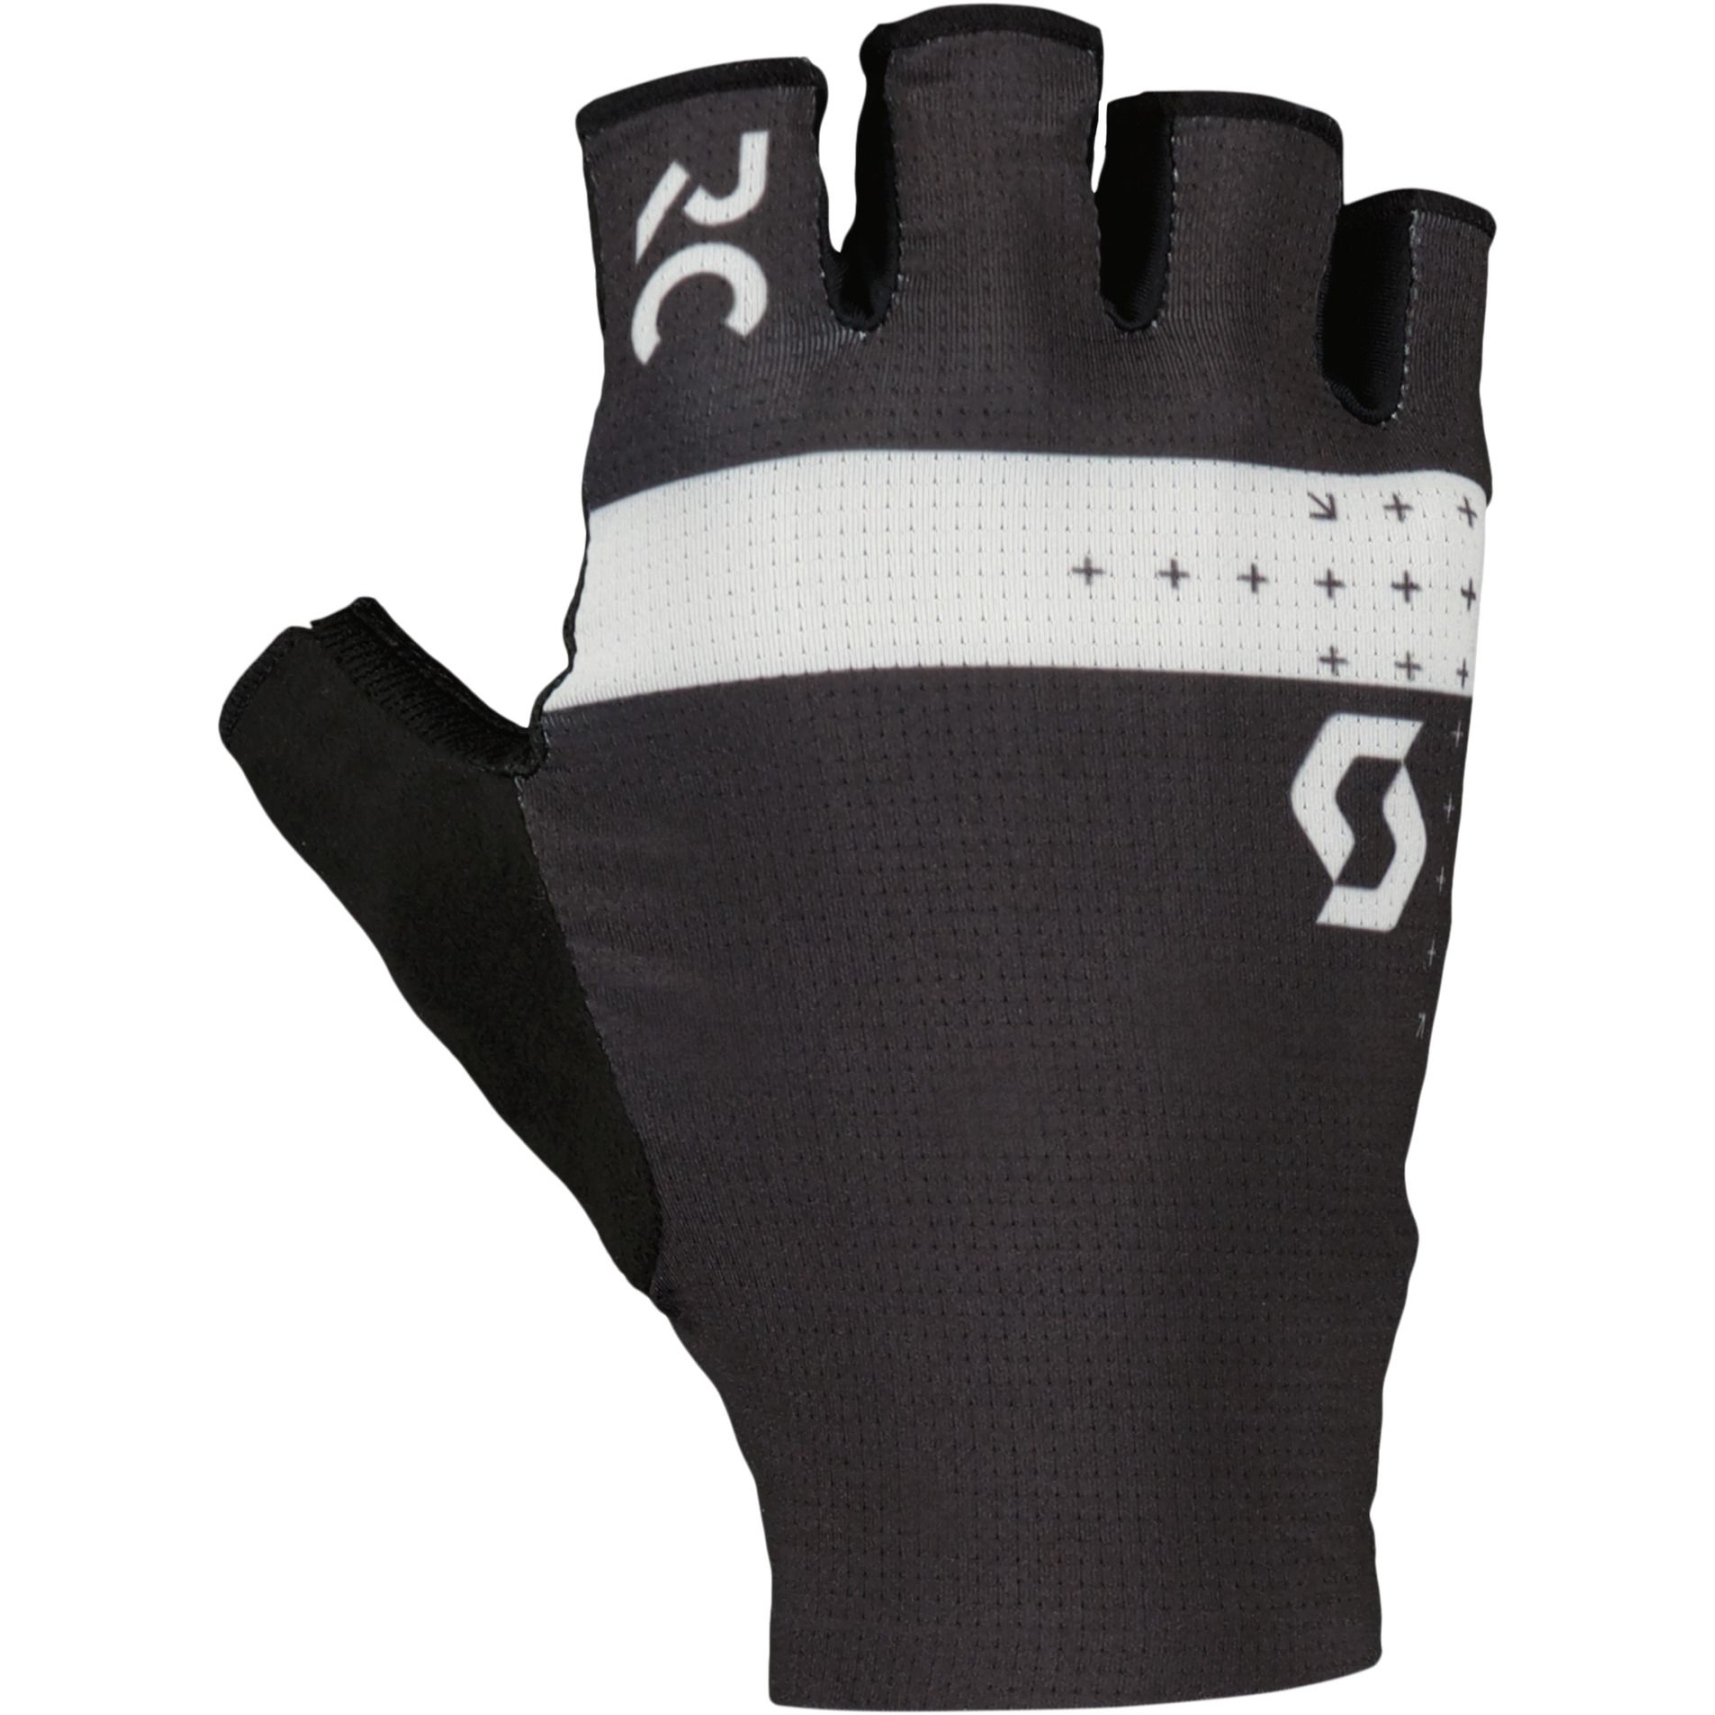 Produktbild von SCOTT RC Pro SF Handschuhe - schwarz/weiß